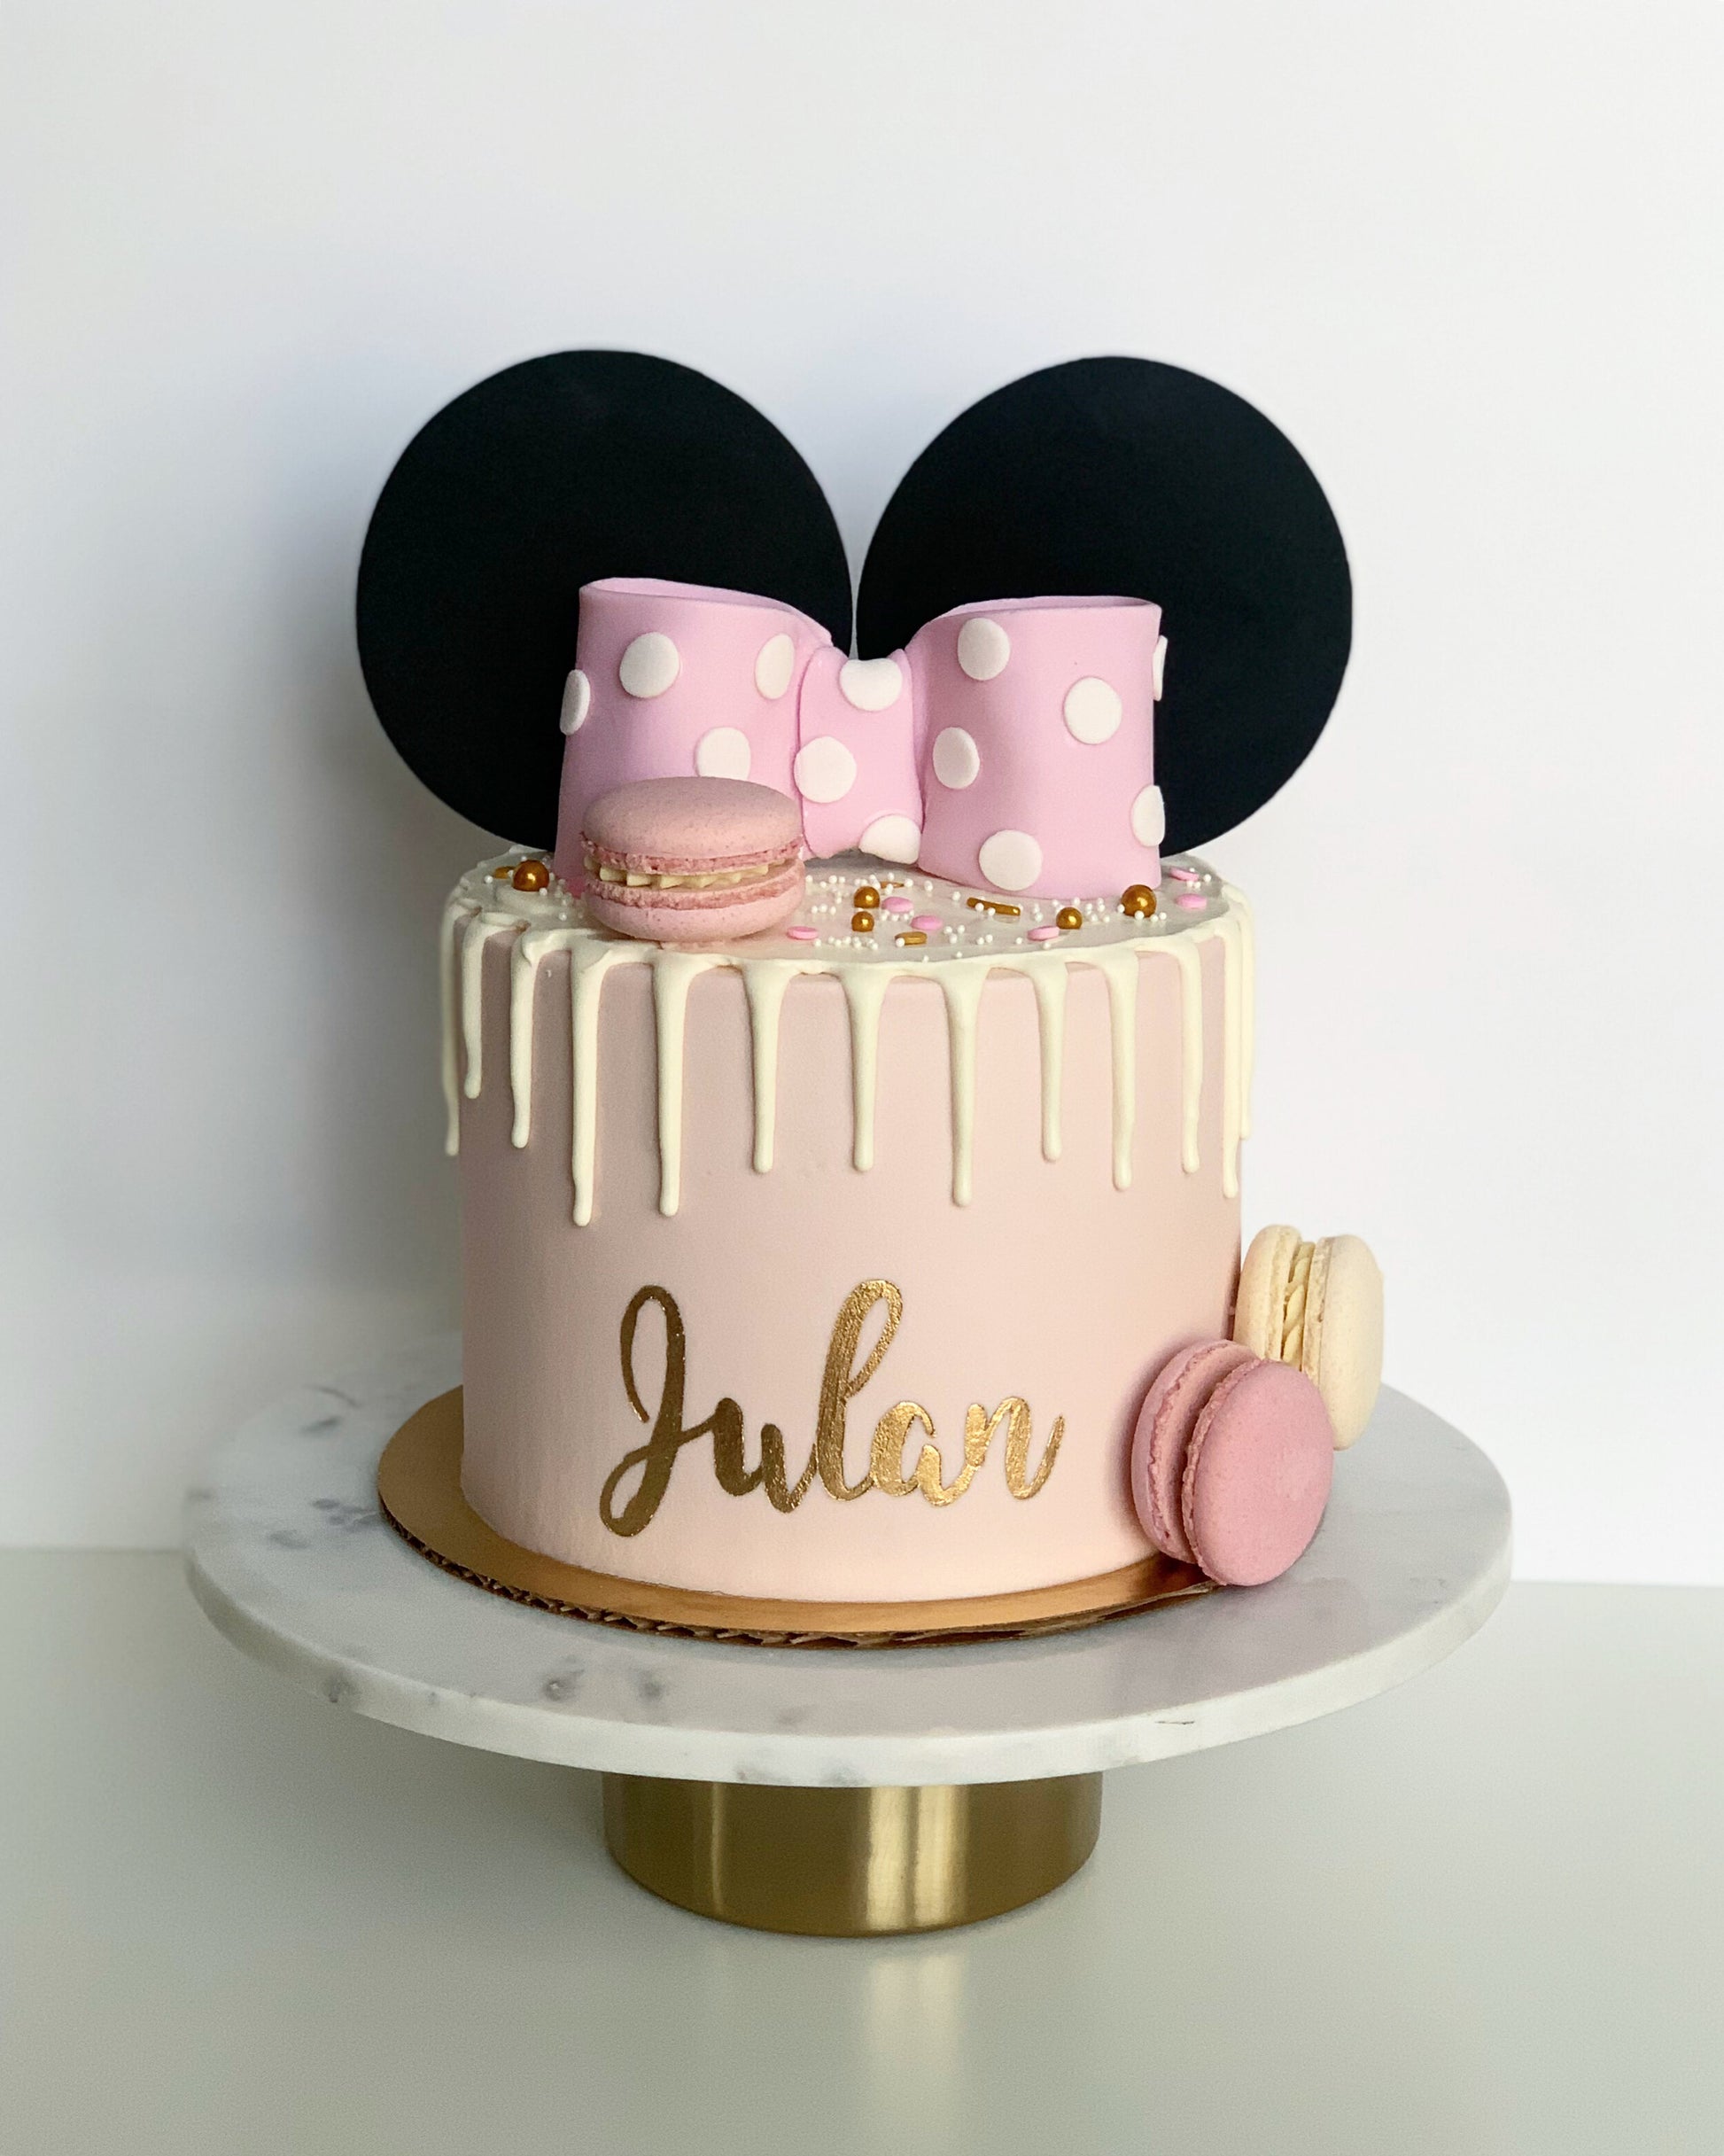 Customizable Cakes for Kids, Designer cake